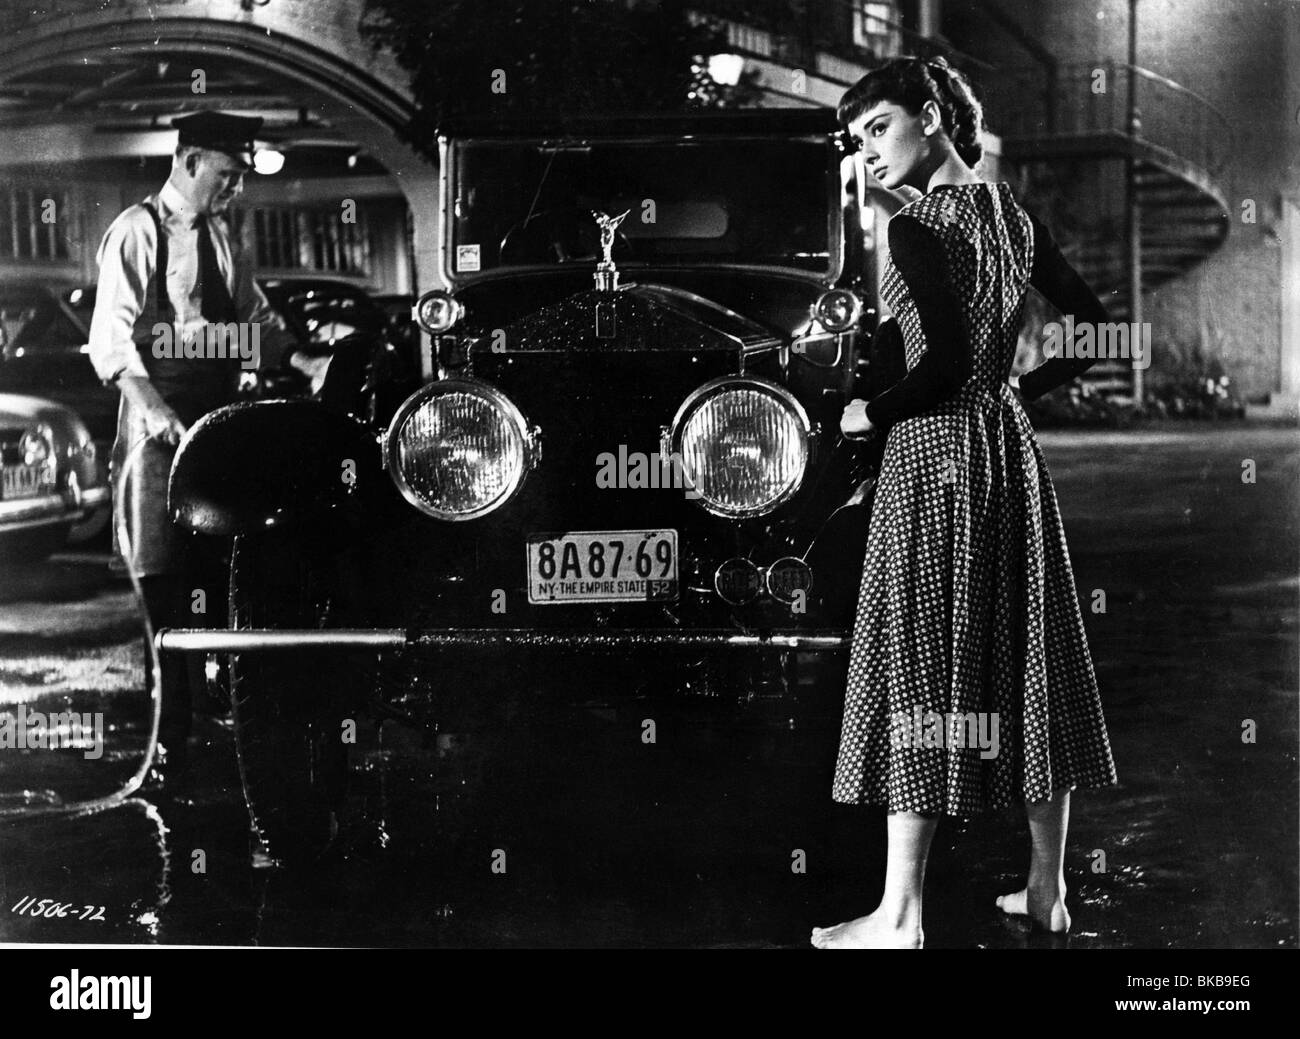 SABRINA FAIR (1954) SABRINA(ALT) AUDREY HEPBURN SBF 019P Stock Photo